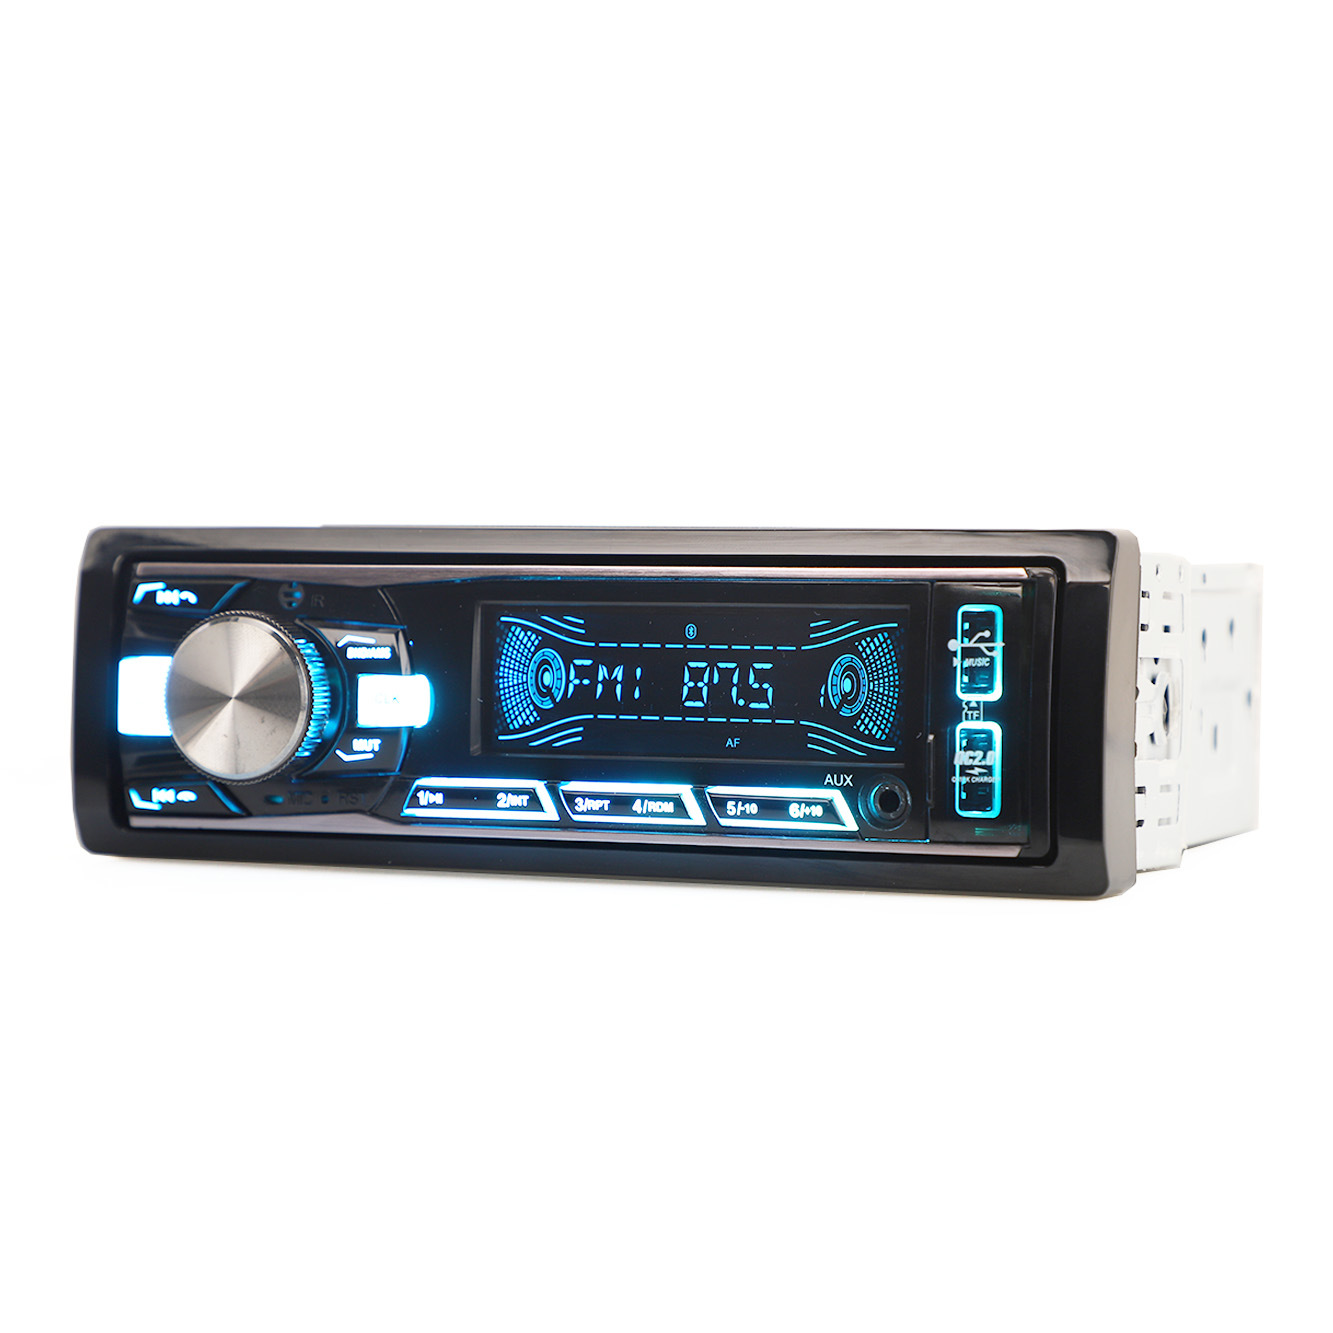 مشغل MP3 بلوحة ثابتة للصوت التلقائي، مشغل صوت ستيريو للسيارة، مشغل سيارة DIN واحد